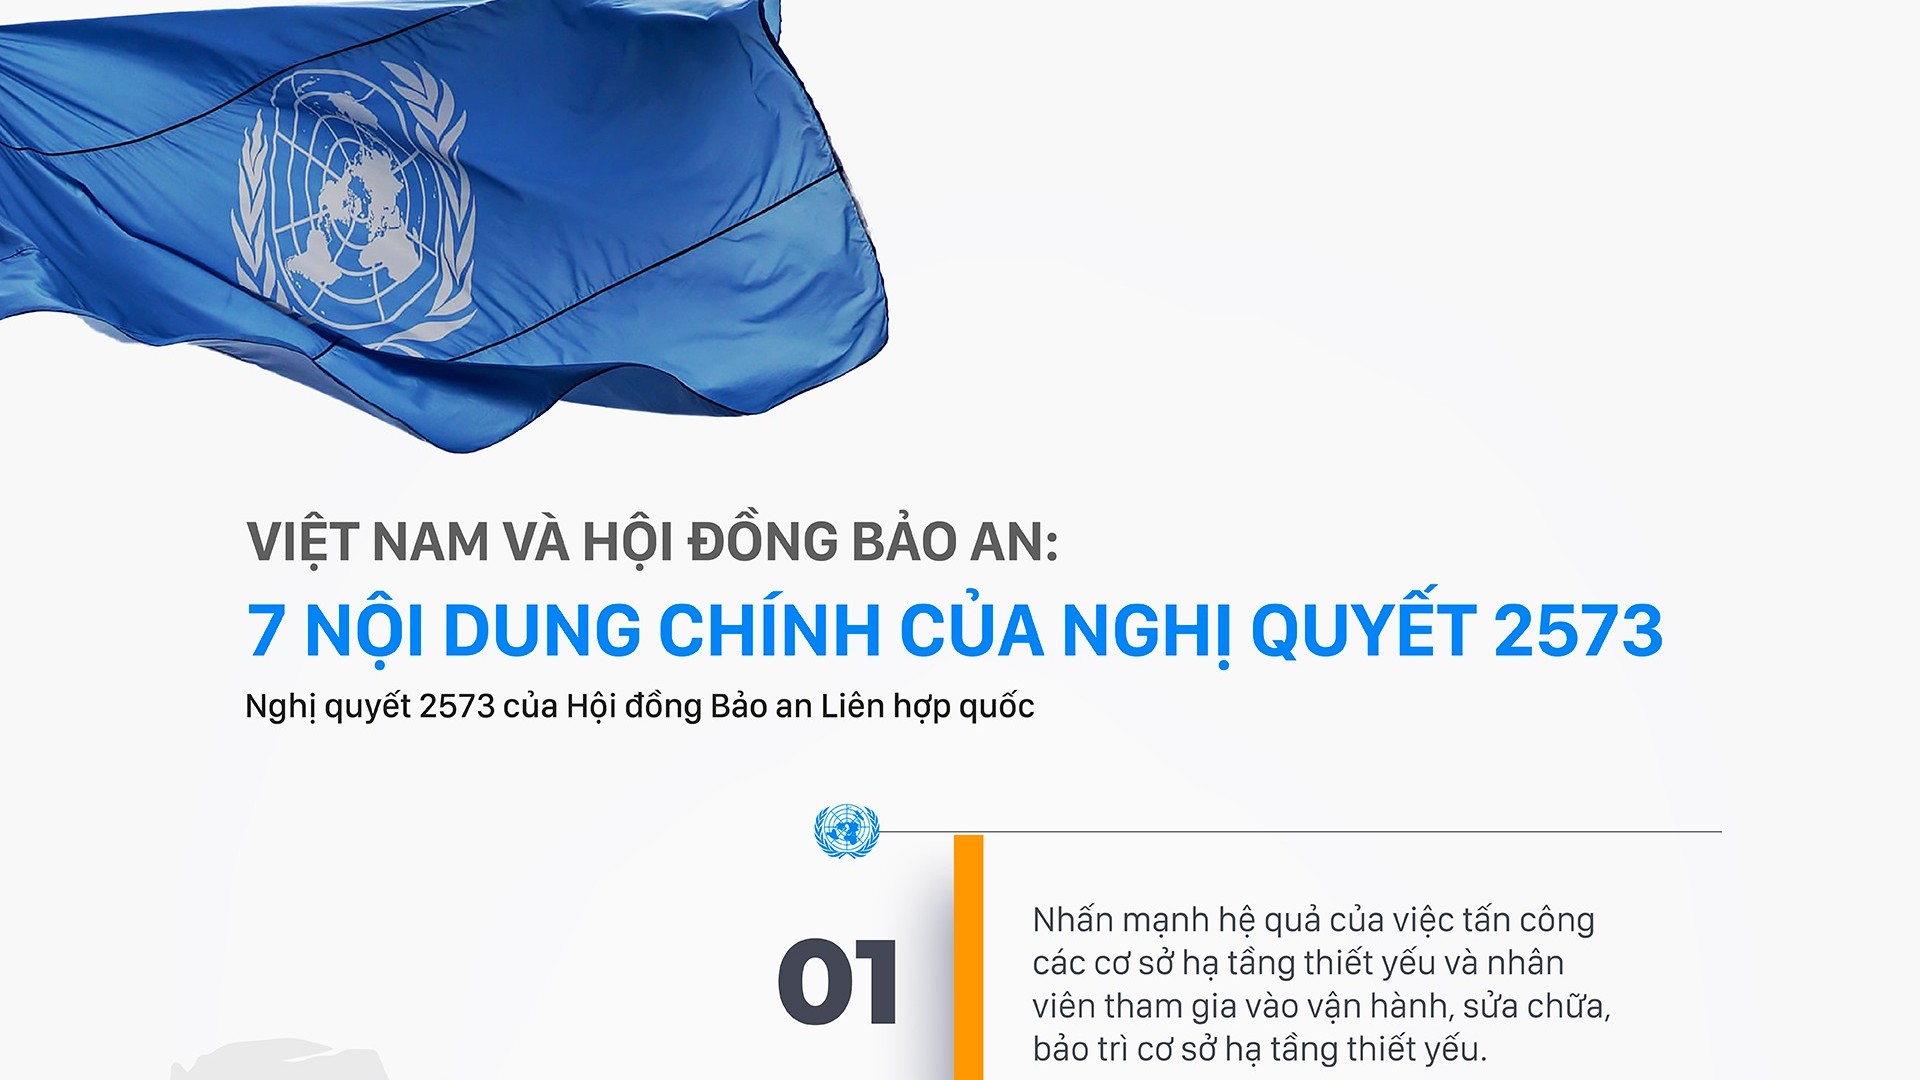 7 nội dung chính của Nghị quyết 2573 do Việt Nam xây dựng được Hội đồng Bảo an thông qua